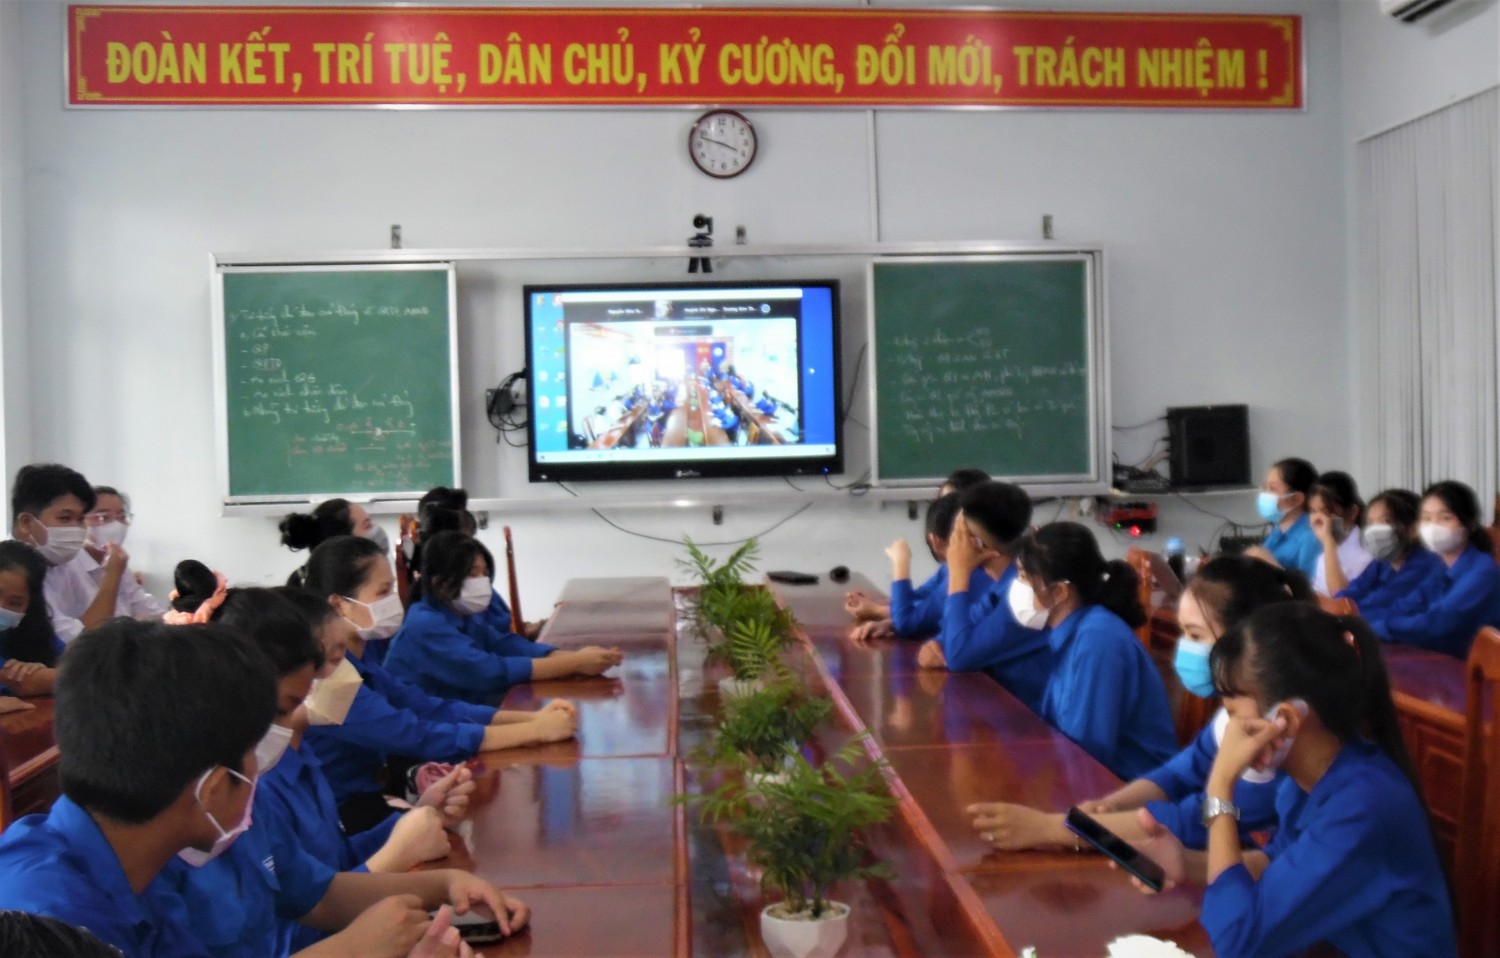 SINH HOẠT ĐOÀN THANH NIÊN THÁNG 10 NĂM 2021 Chủ điểm: “Thanh niên Việt Nam vững bước, chinh phục tương lai ”